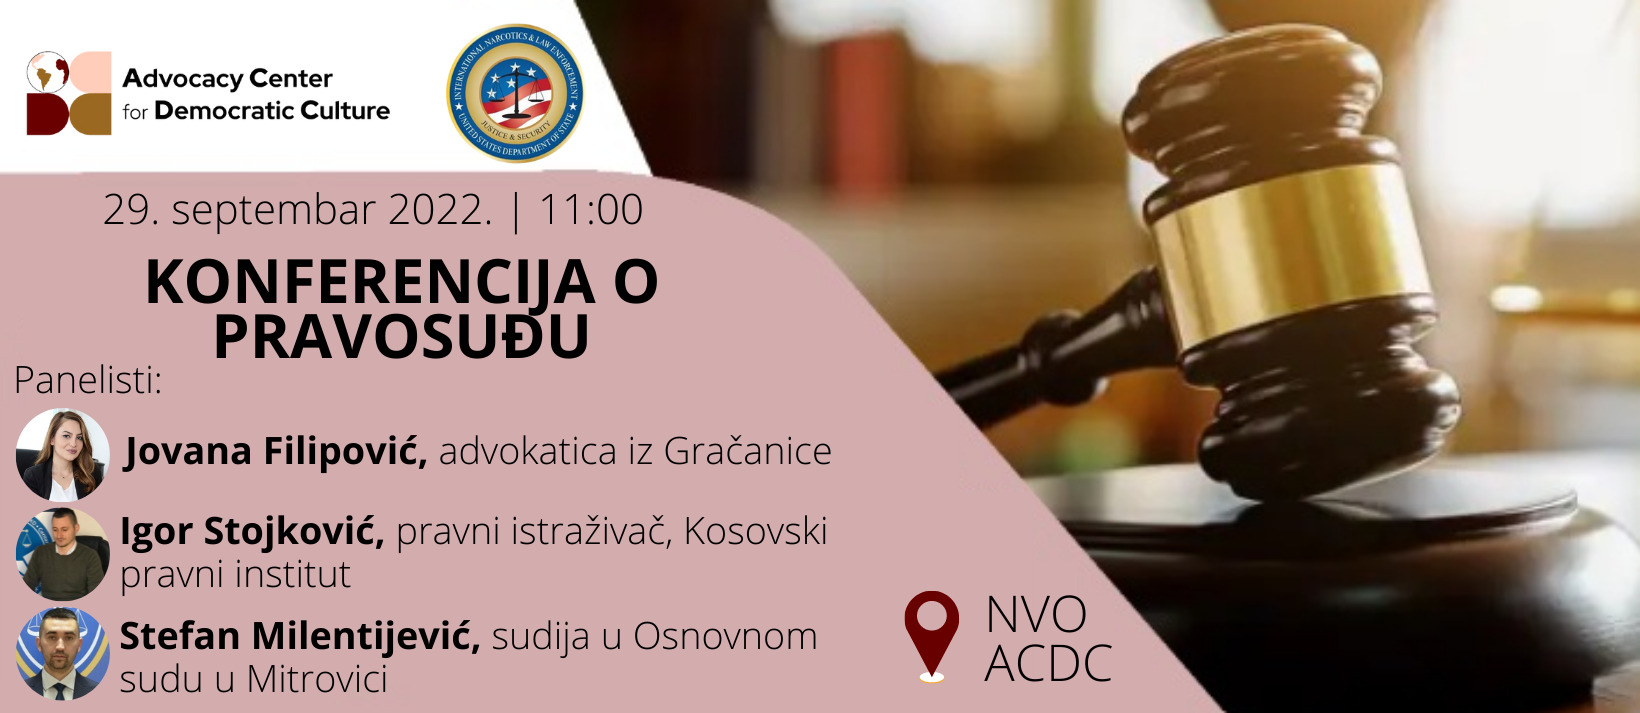 konferencija-o-pravosudu-29-septembar-2022-1100-1300